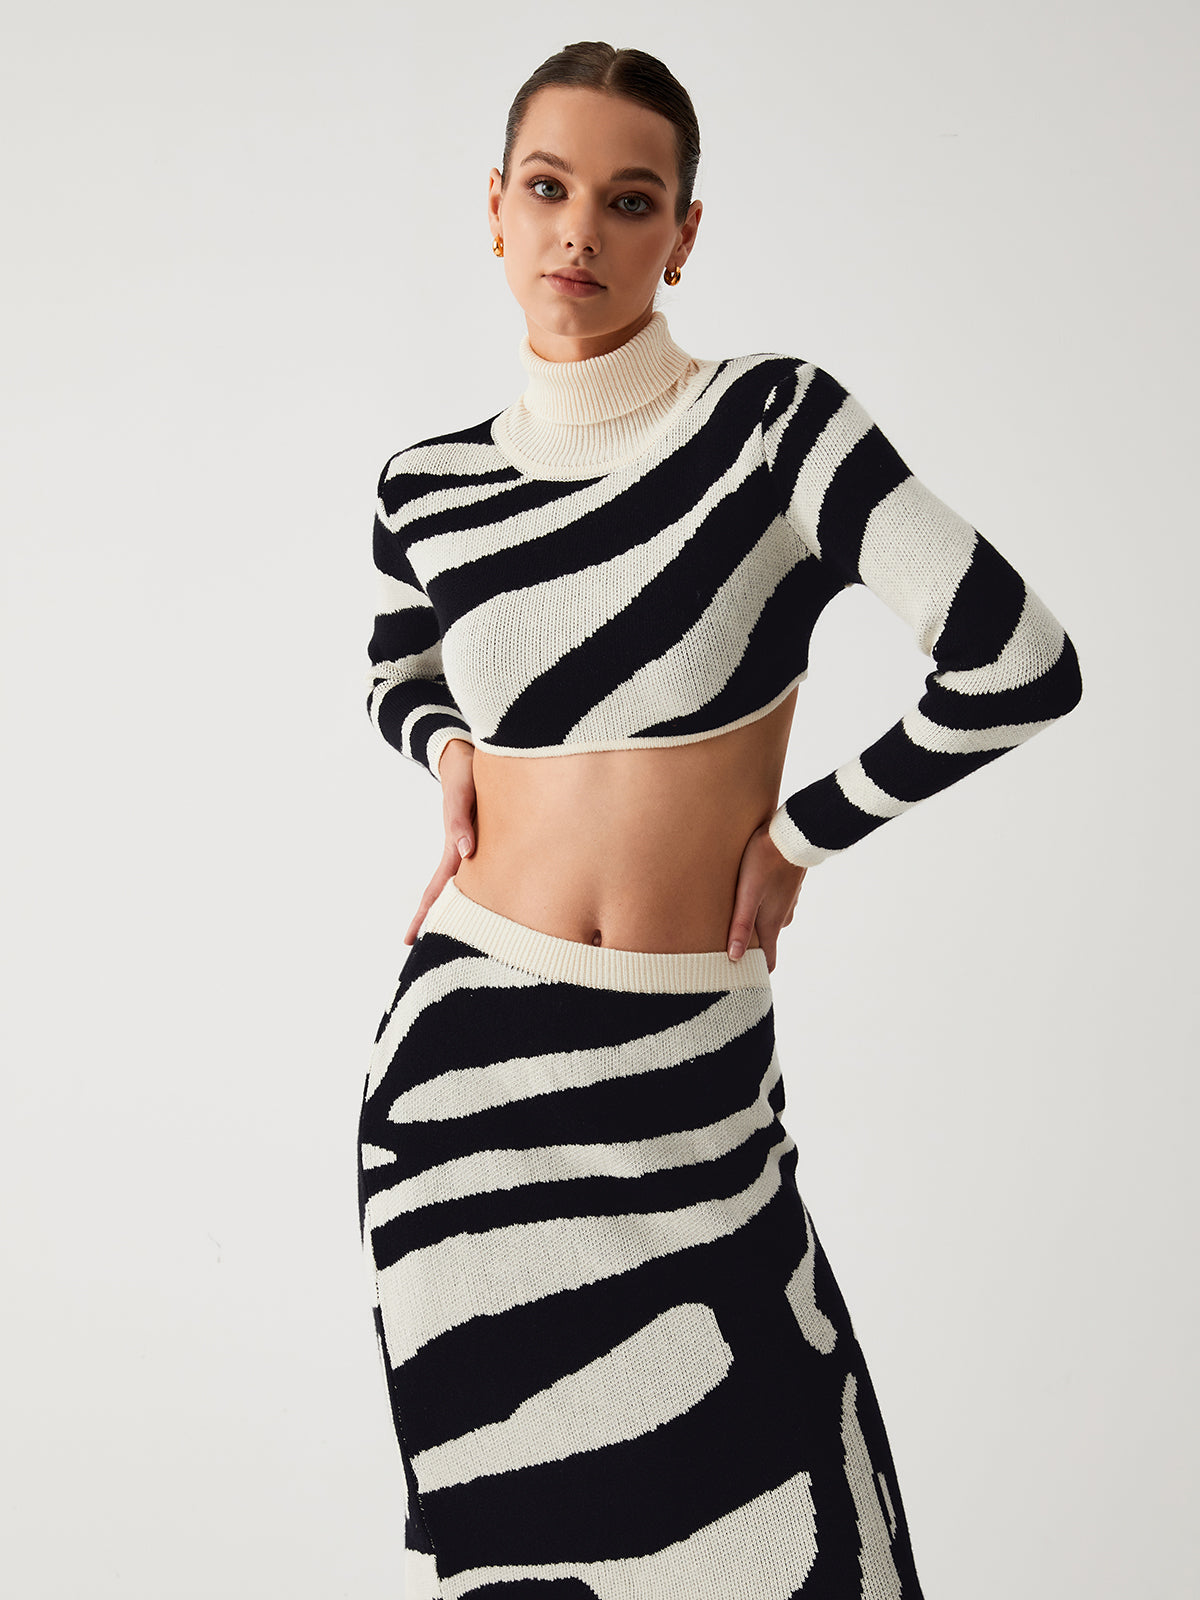 Zebra Print Mock Neck Crop Top Two Piece Skirt Set